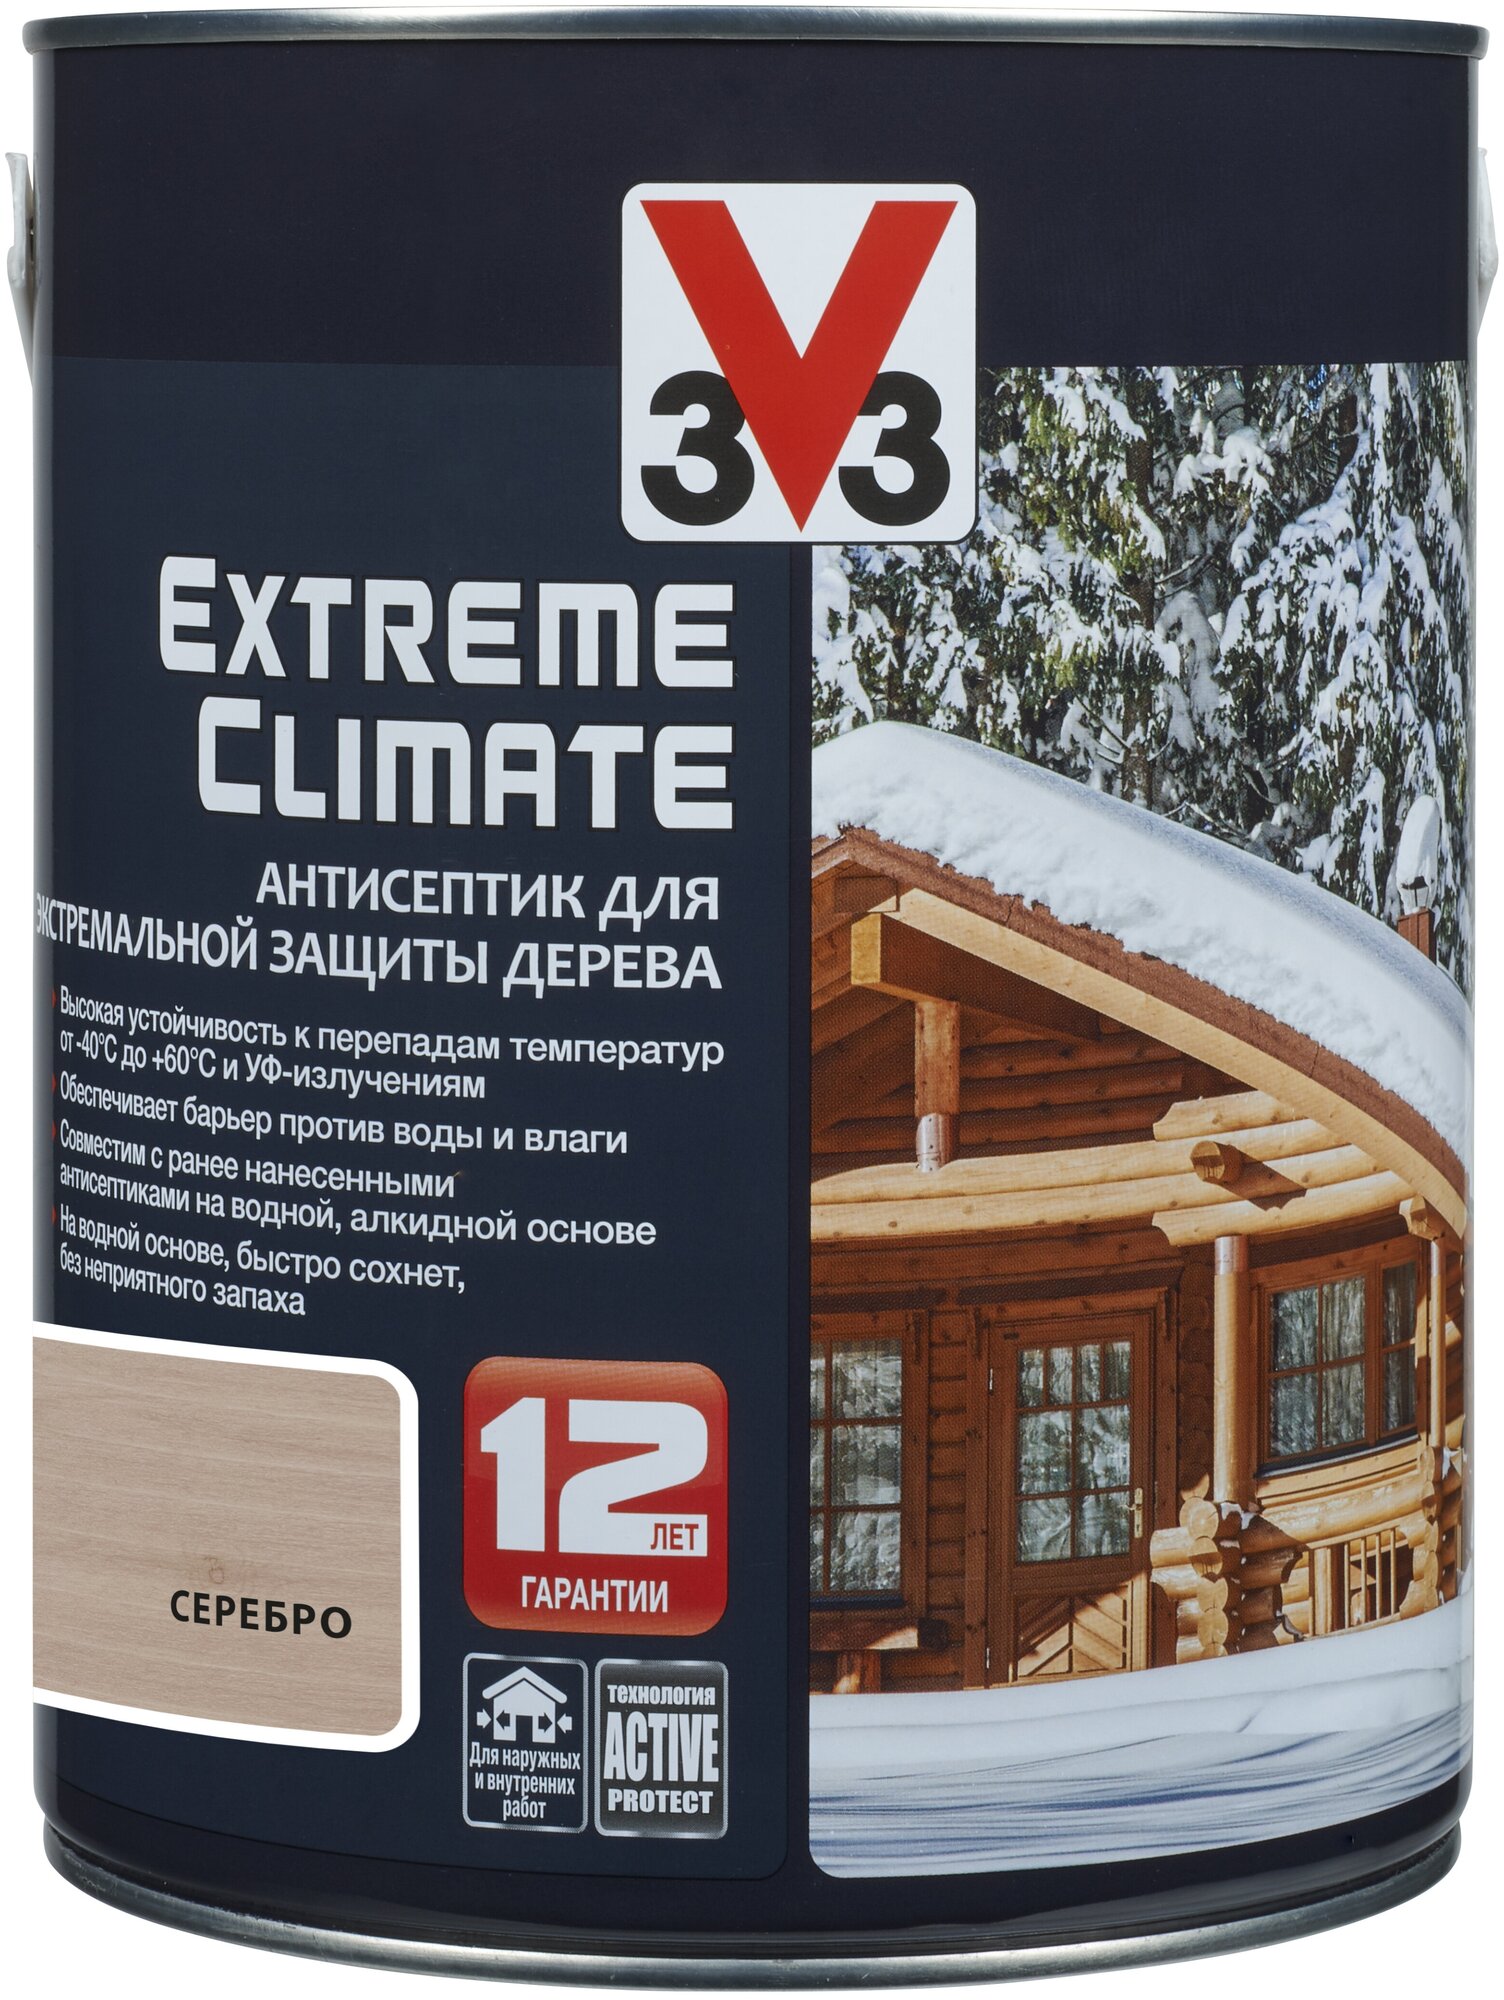 Пропитка V33 антисептик для экстремальной защиты дерева Extreme Climate